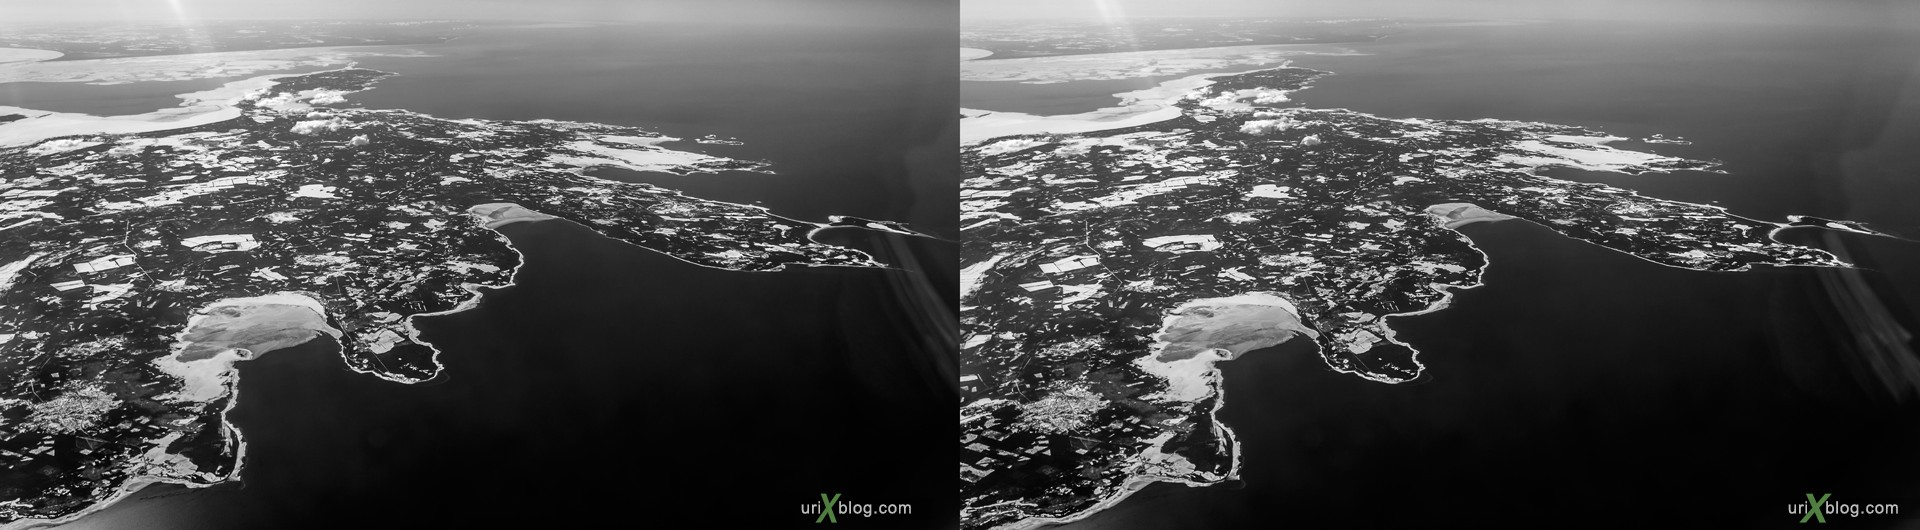 2013, Балтийское море, Рижский залив, остров Сааремаа, панорама, самолёт, чёрно-белое, чб, снег, лёд, облака, горизонт, 3D, перекрёстные стереопары, стерео, стереопара, стереопары